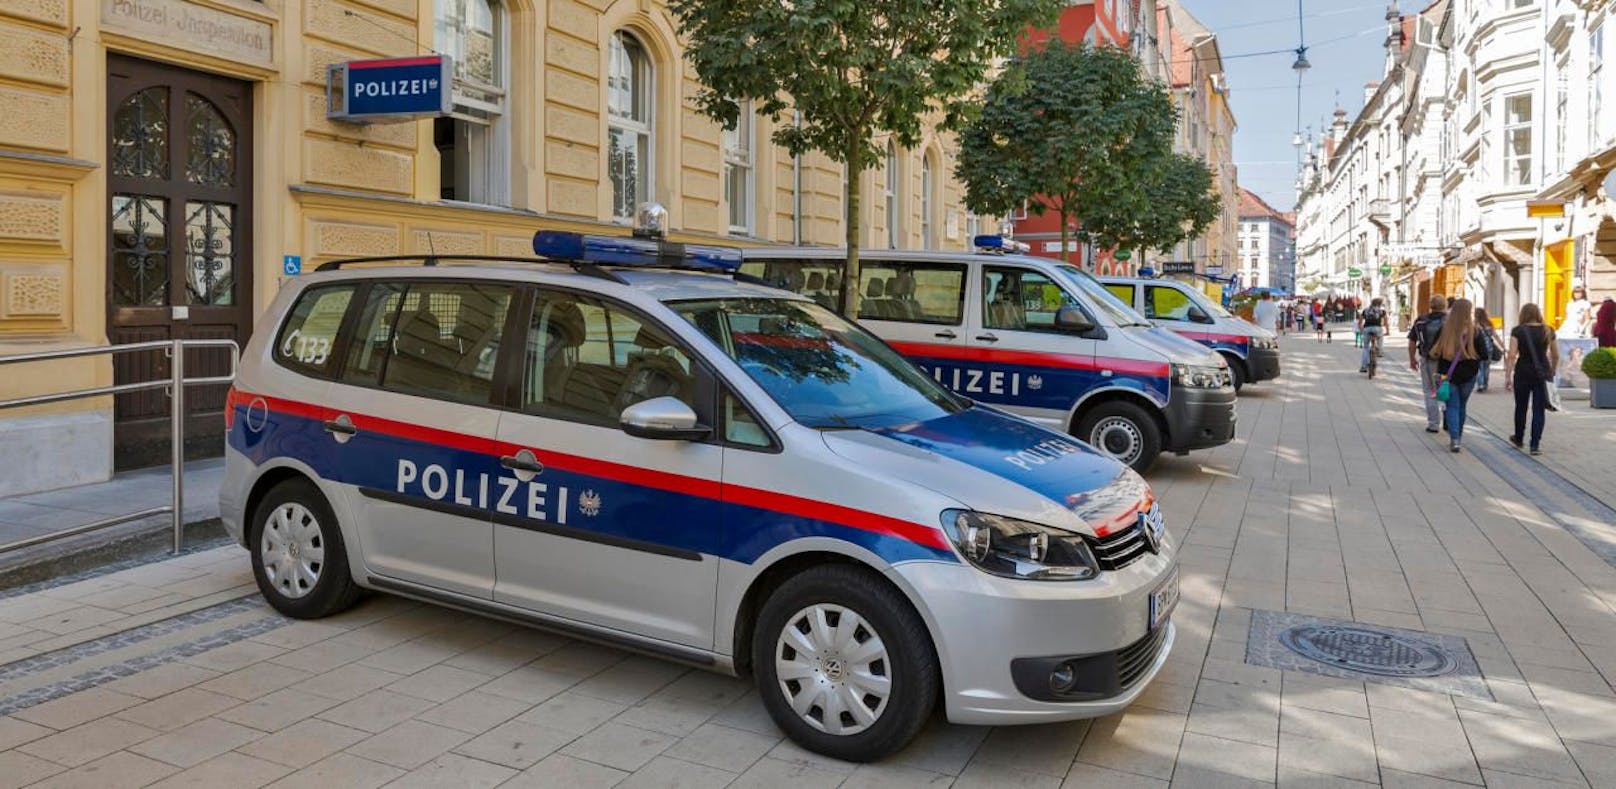 Die Polizei Wien hat den Parteienverkehr eingestellt.